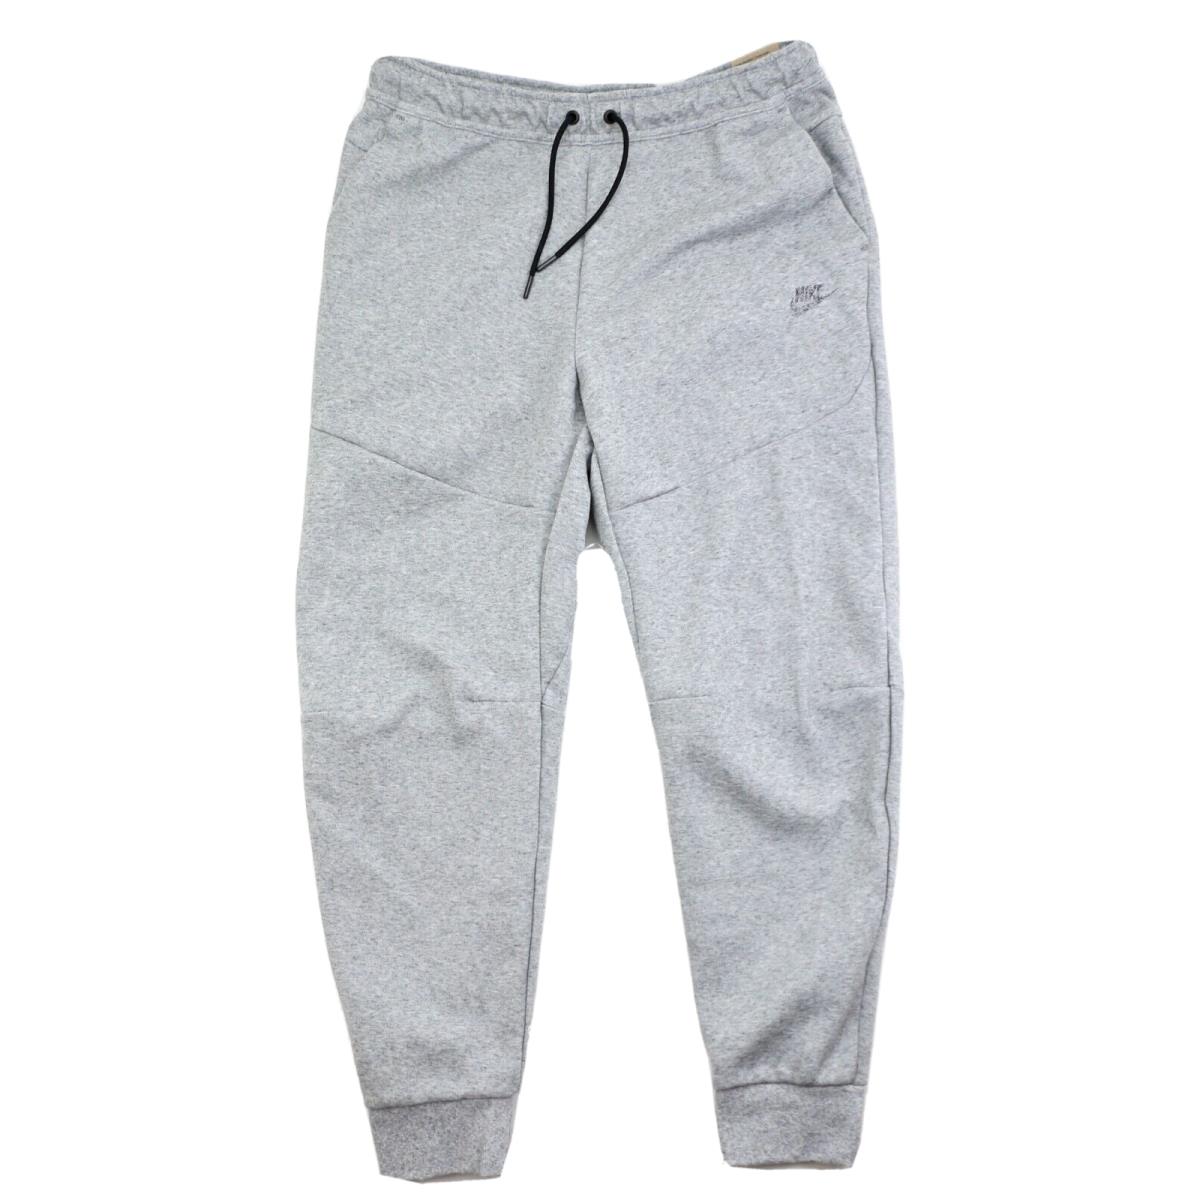 Nike Sportswear Tech Fleece Pants Men`s Size Large DR9162-010 Joggers Grey